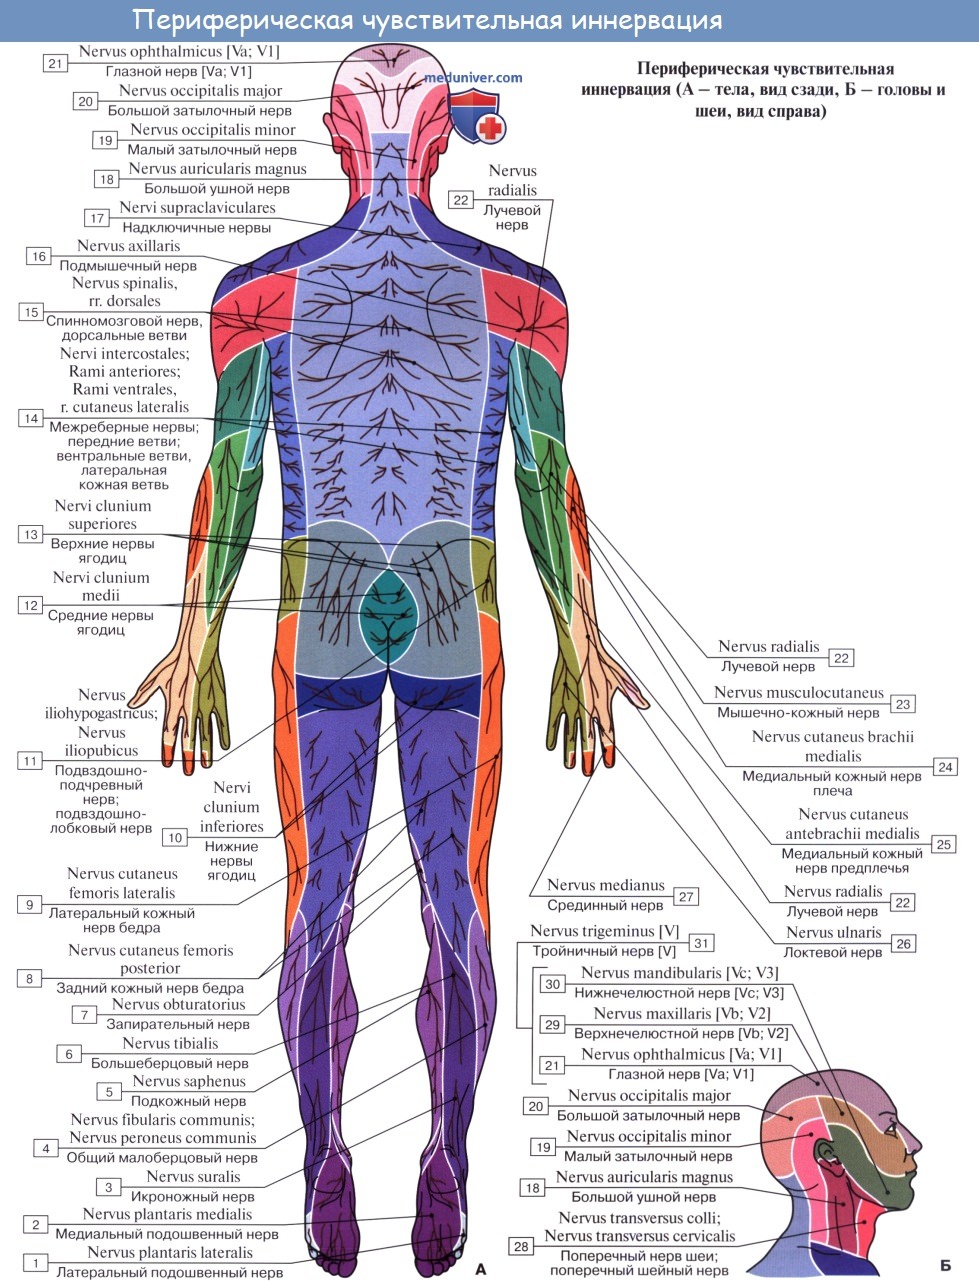 Анатомия: Переферическая нервная система. Аномальные или соматические нервы. Спинномозговые нервы, nn. spinales